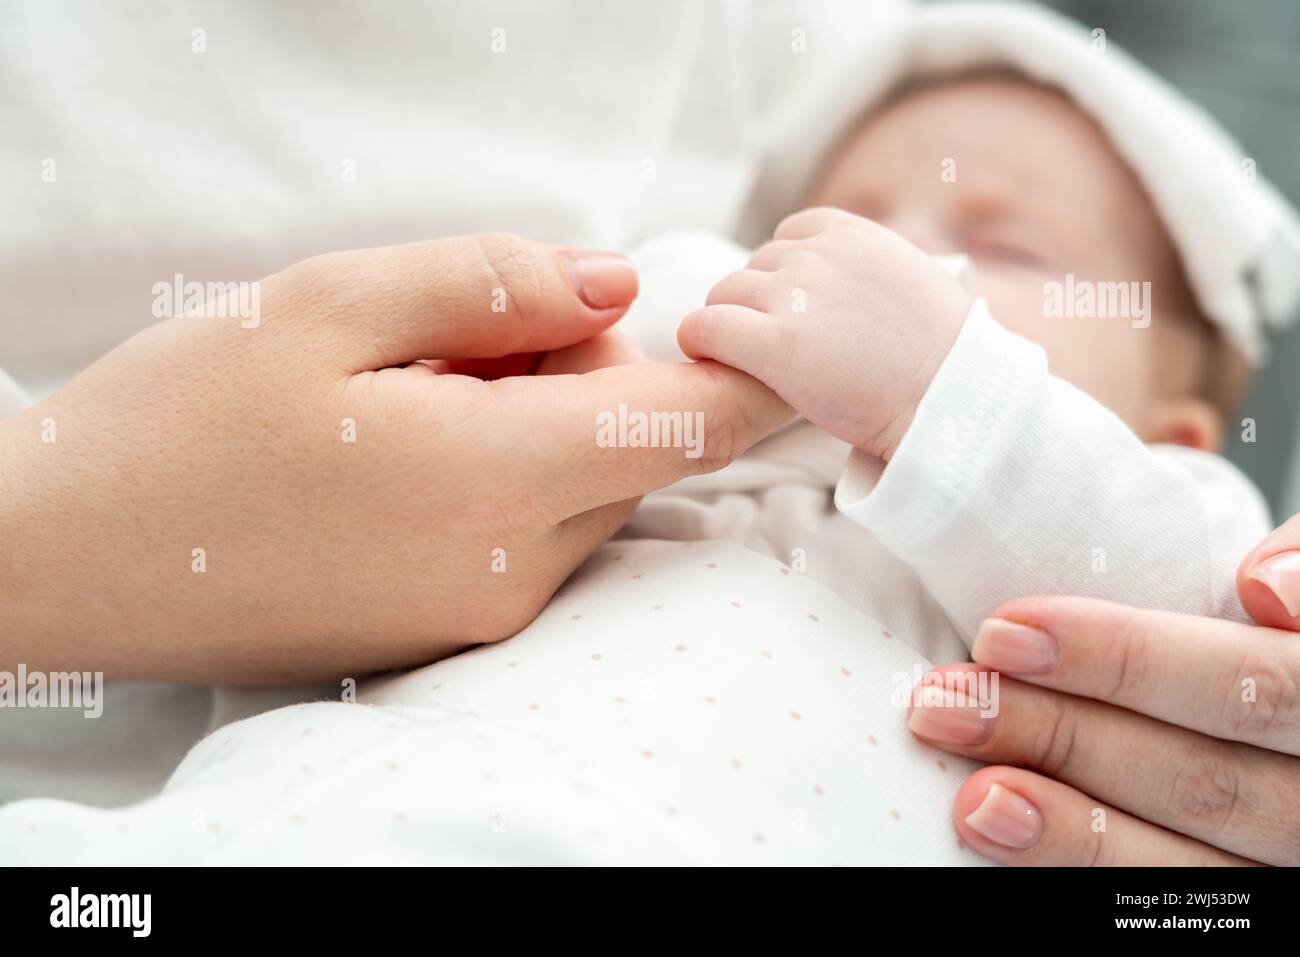 Das Neugeborene findet Trost, den Finger der Mutter während der Krankheit zu halten. Das Konzept des mütterlichen Komforts in der Belastungszeit Stockfoto